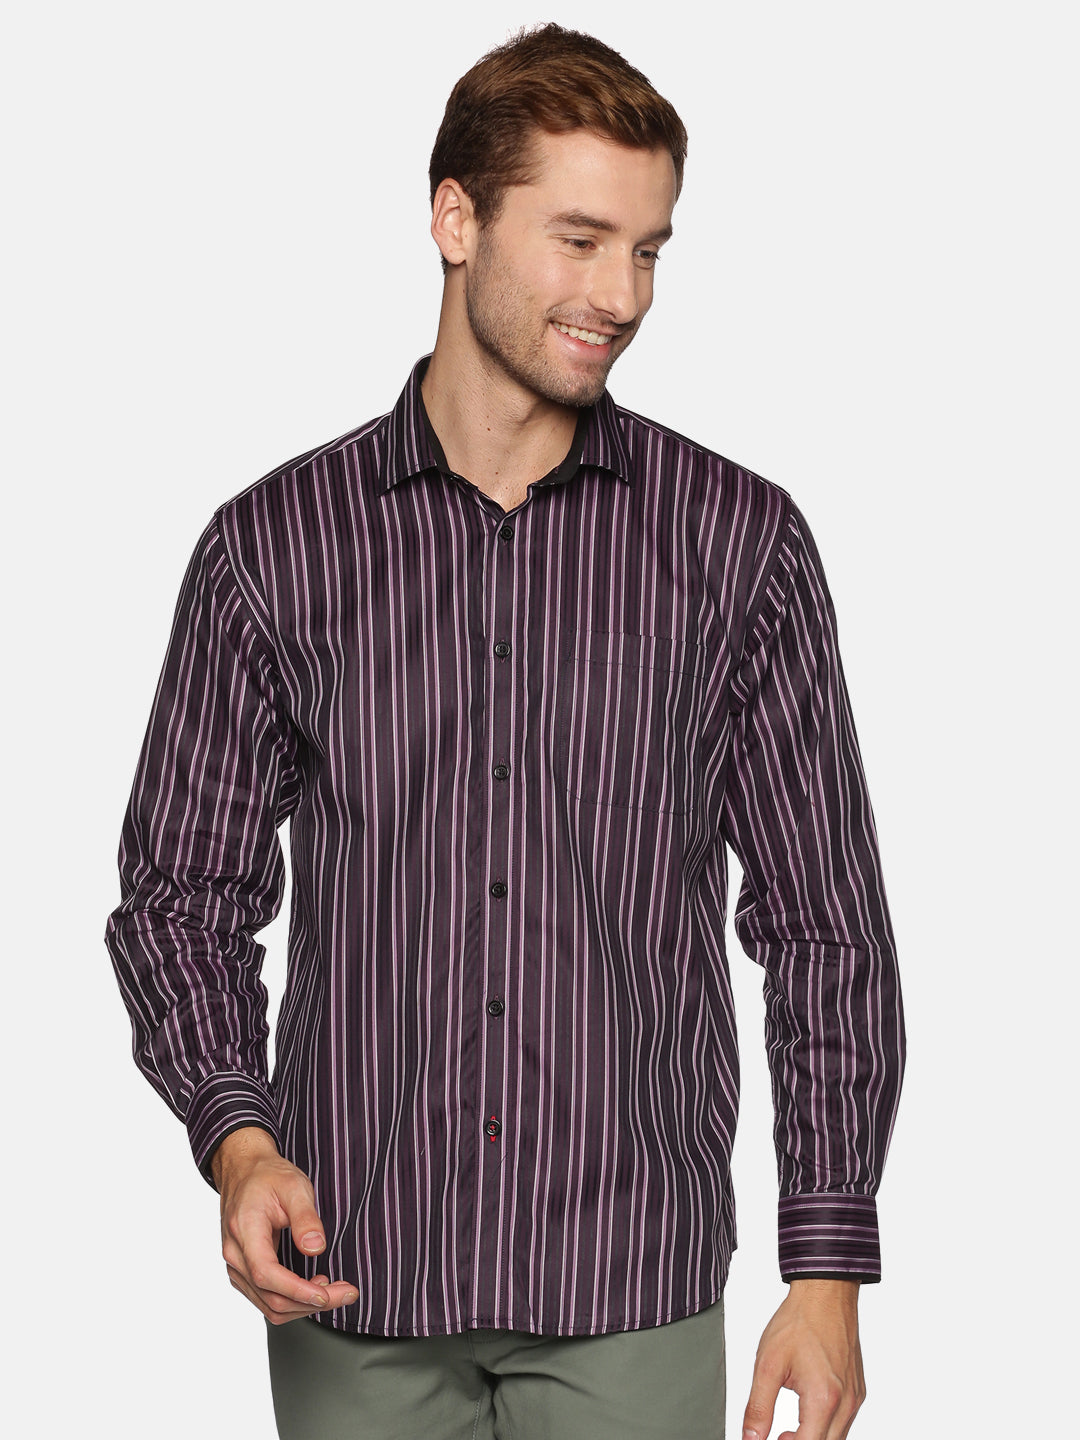 Don Vino Men's Stripes Full Sleeve Shirt